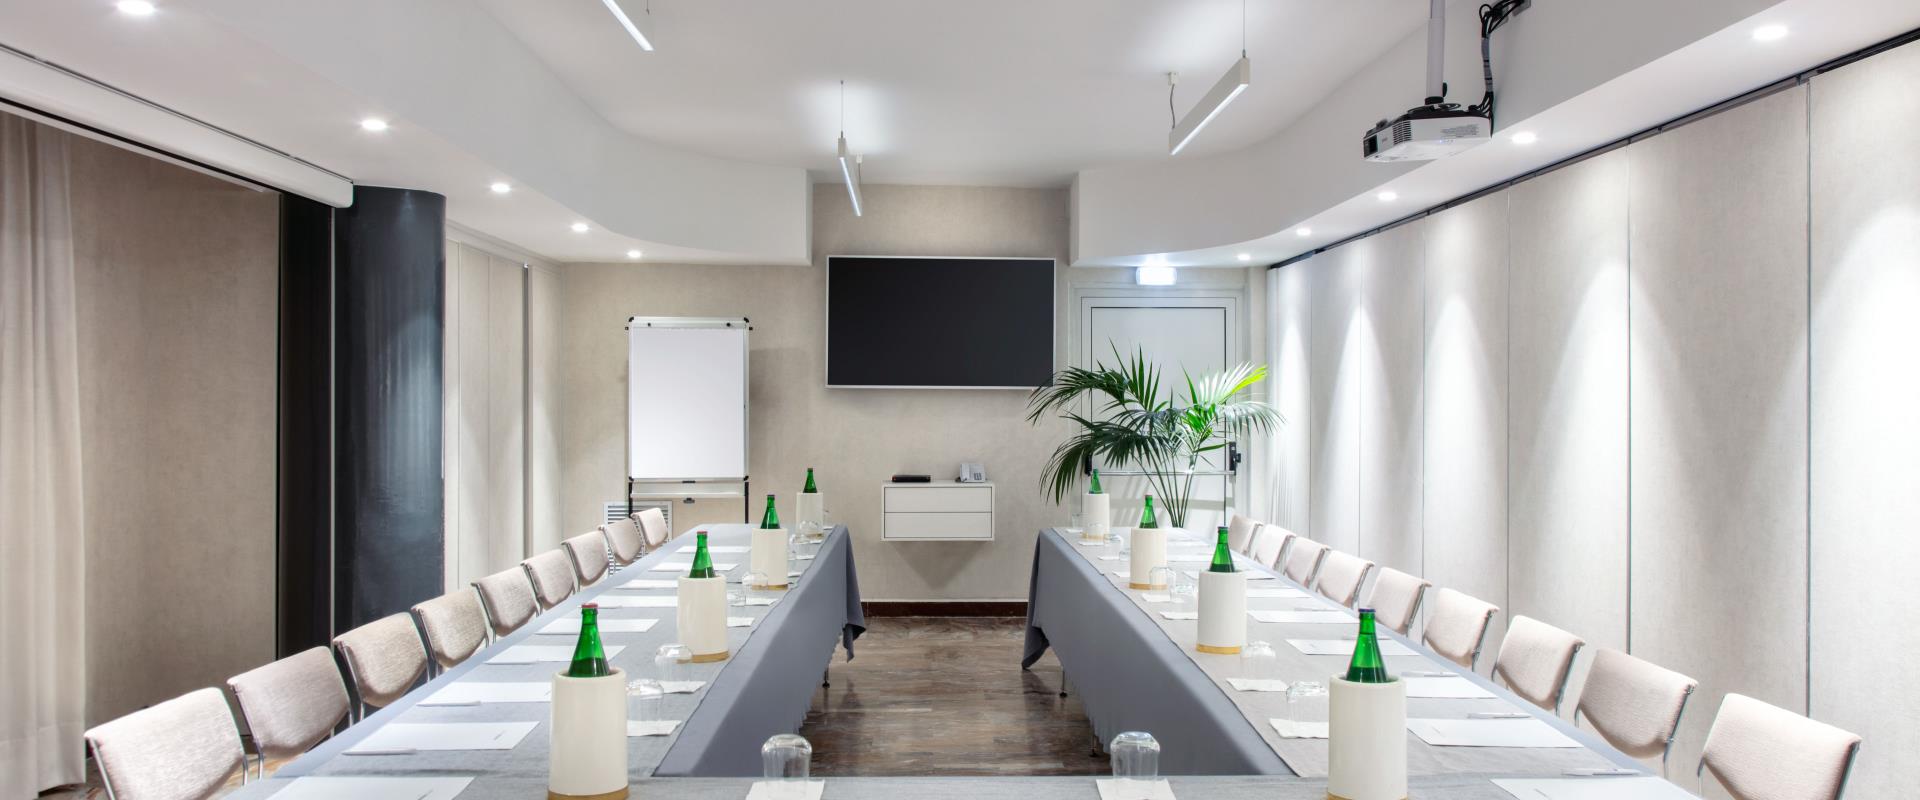 Sala de reuniones Ischia Hotel Paradiso, disposición de la mesa de herradura: 22 personas